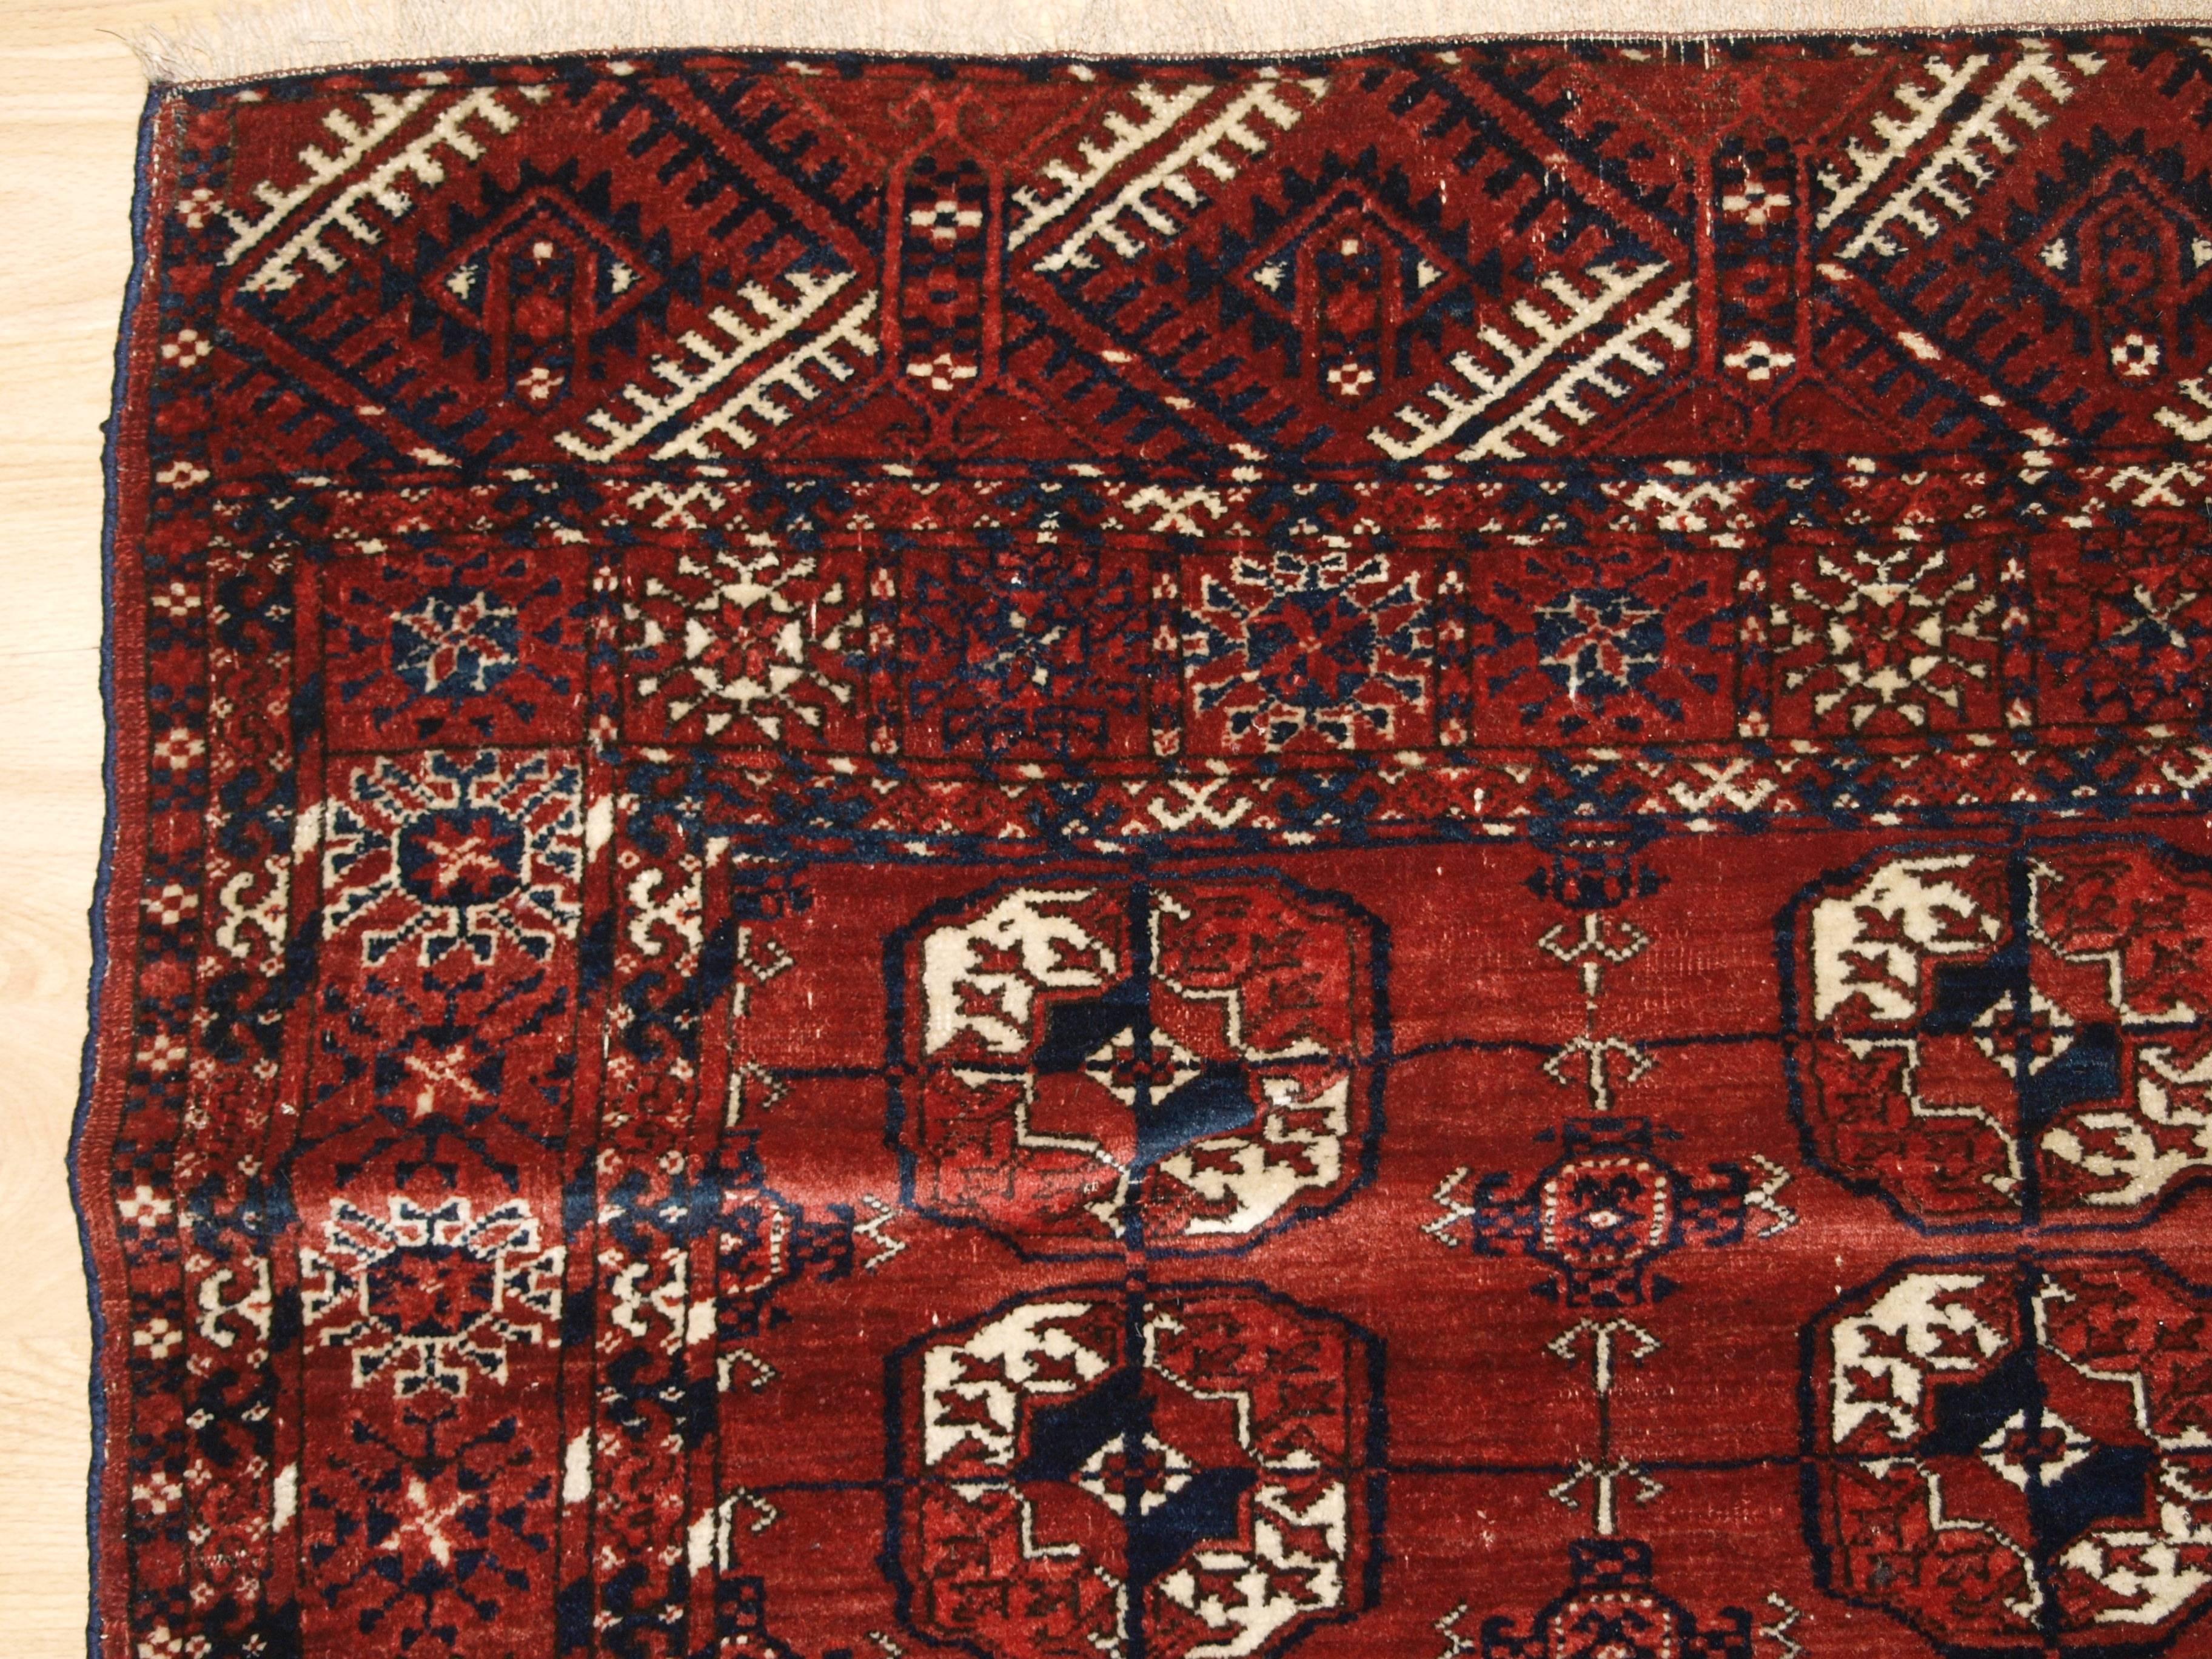 Central Asian Antique Tekke Turkmen Rug of Excellent Design and Color, circa 1900 For Sale